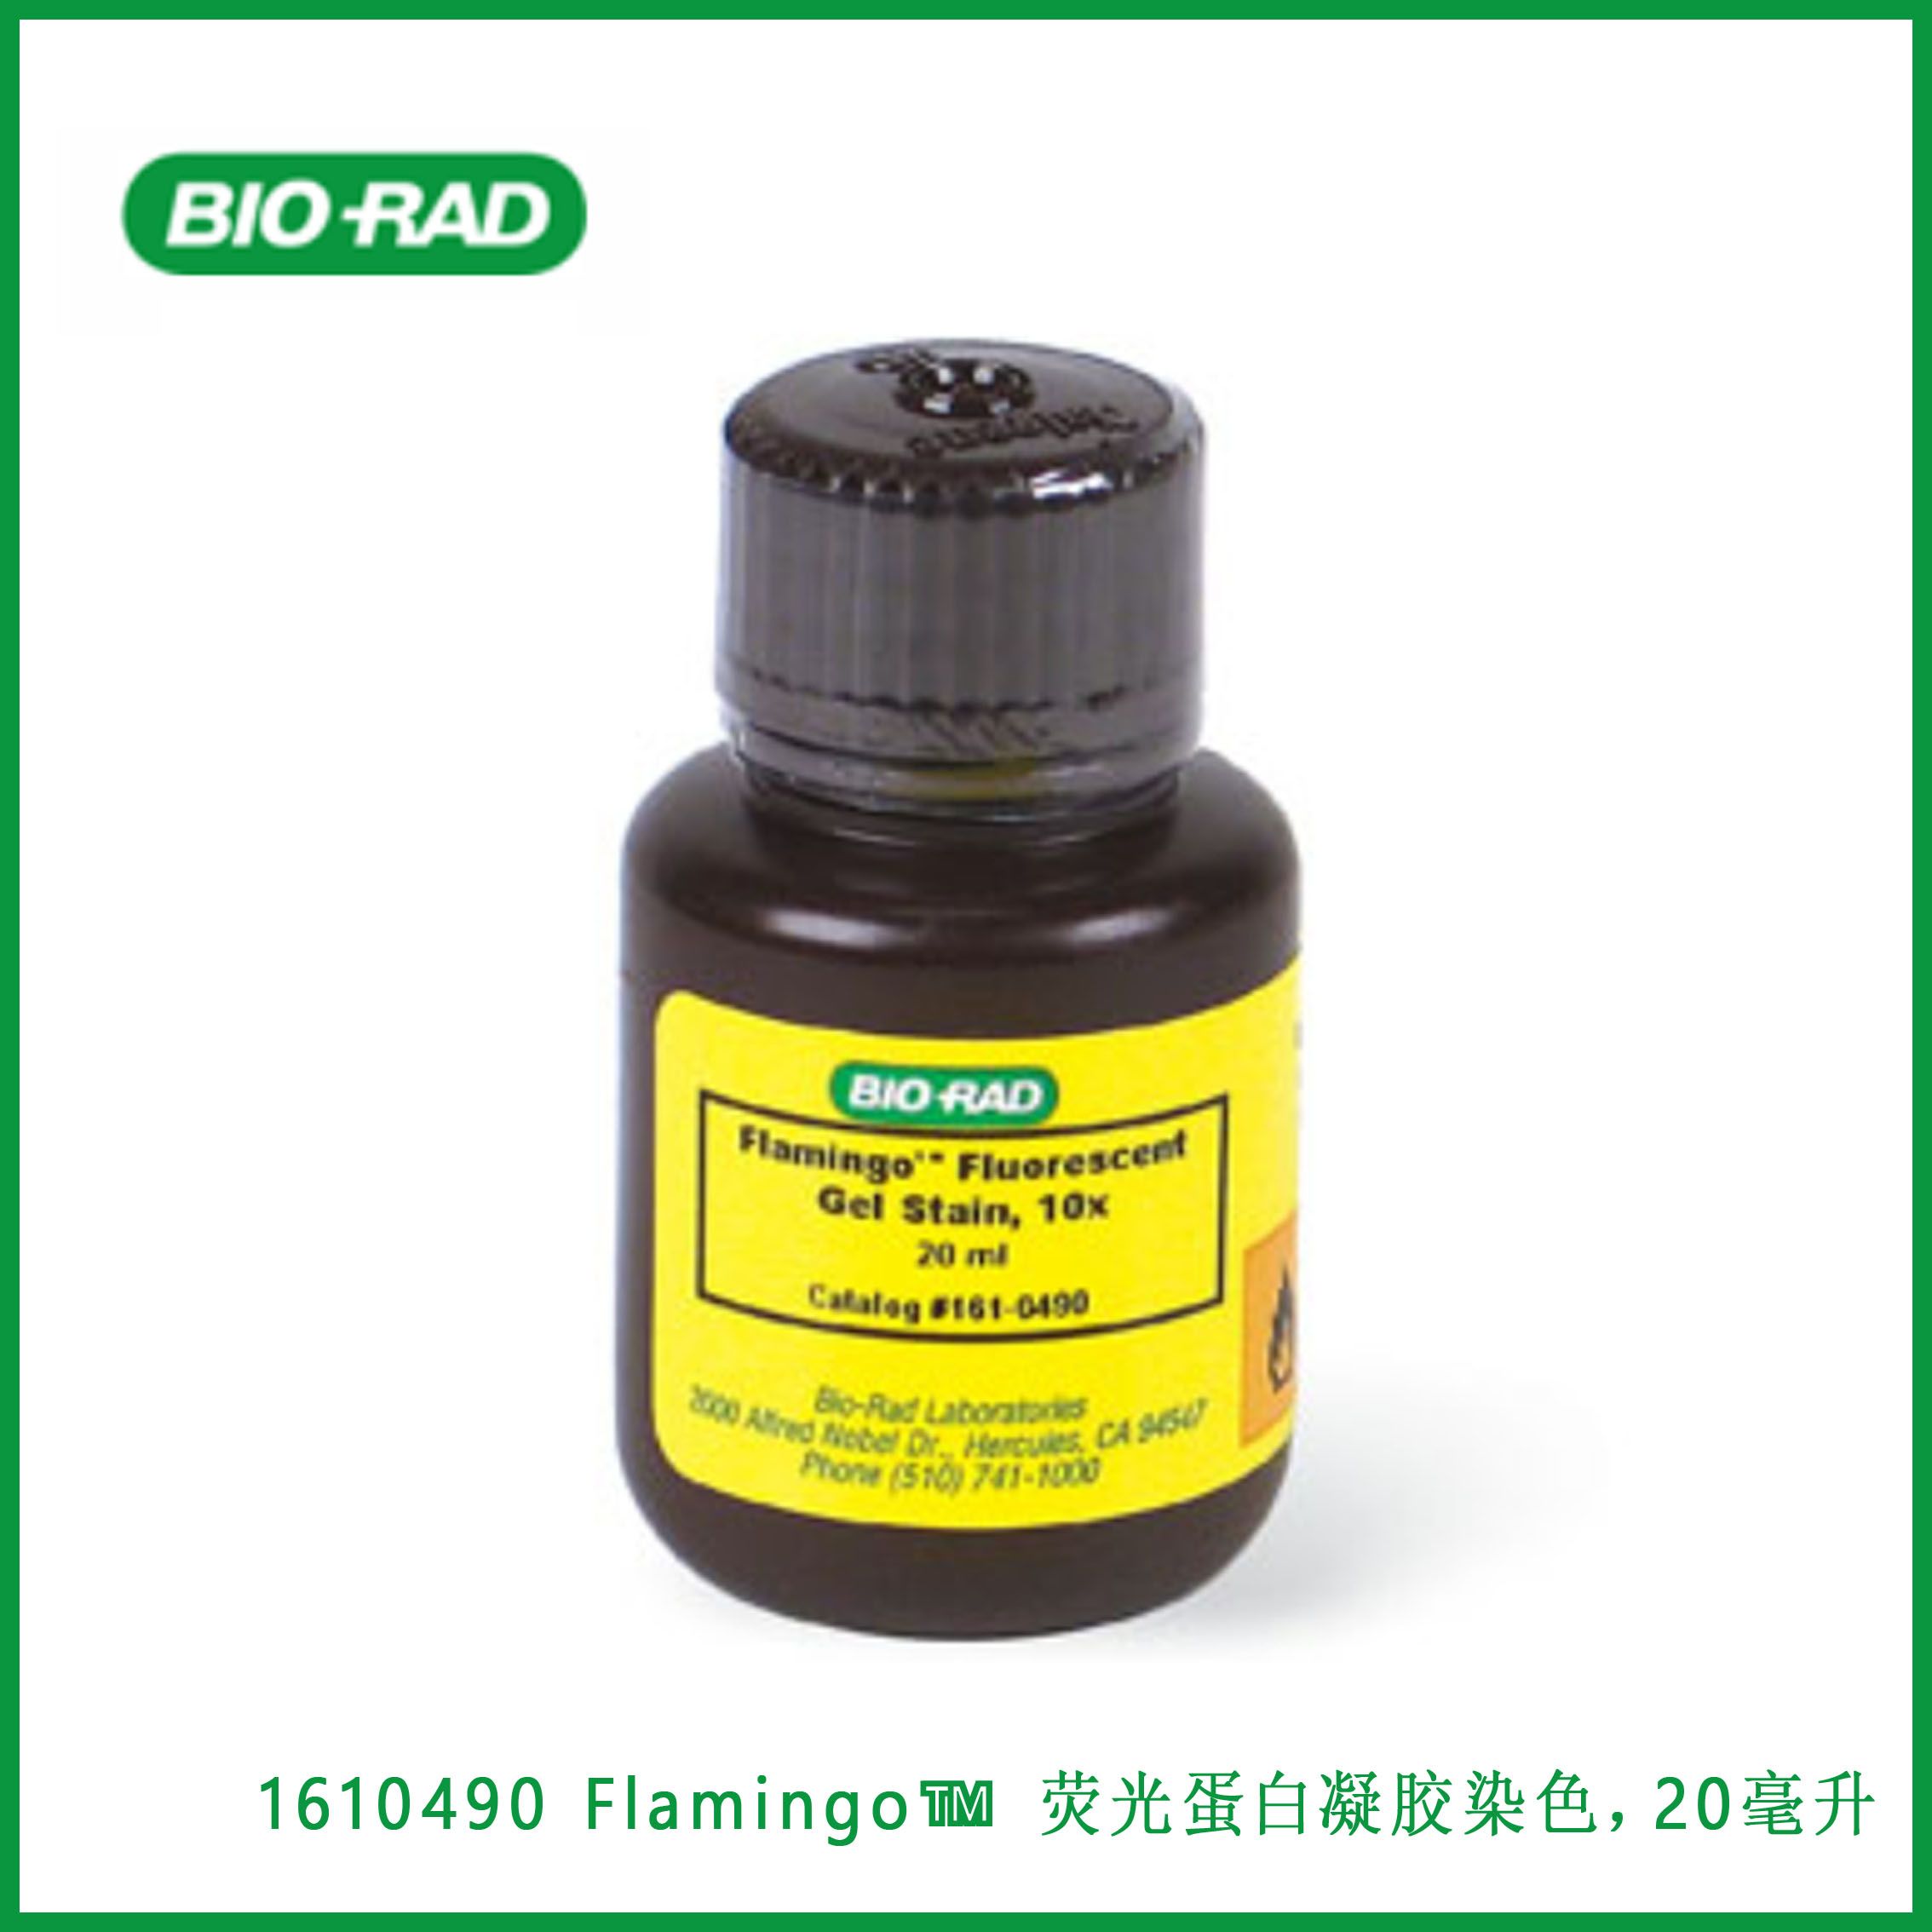 伯乐Bio-Rad1610490 Flamingo™ Fluorescent Protein Gel Stain, 20 ml, Flamingo™ 荧光蛋白凝胶染色，20毫升，现货